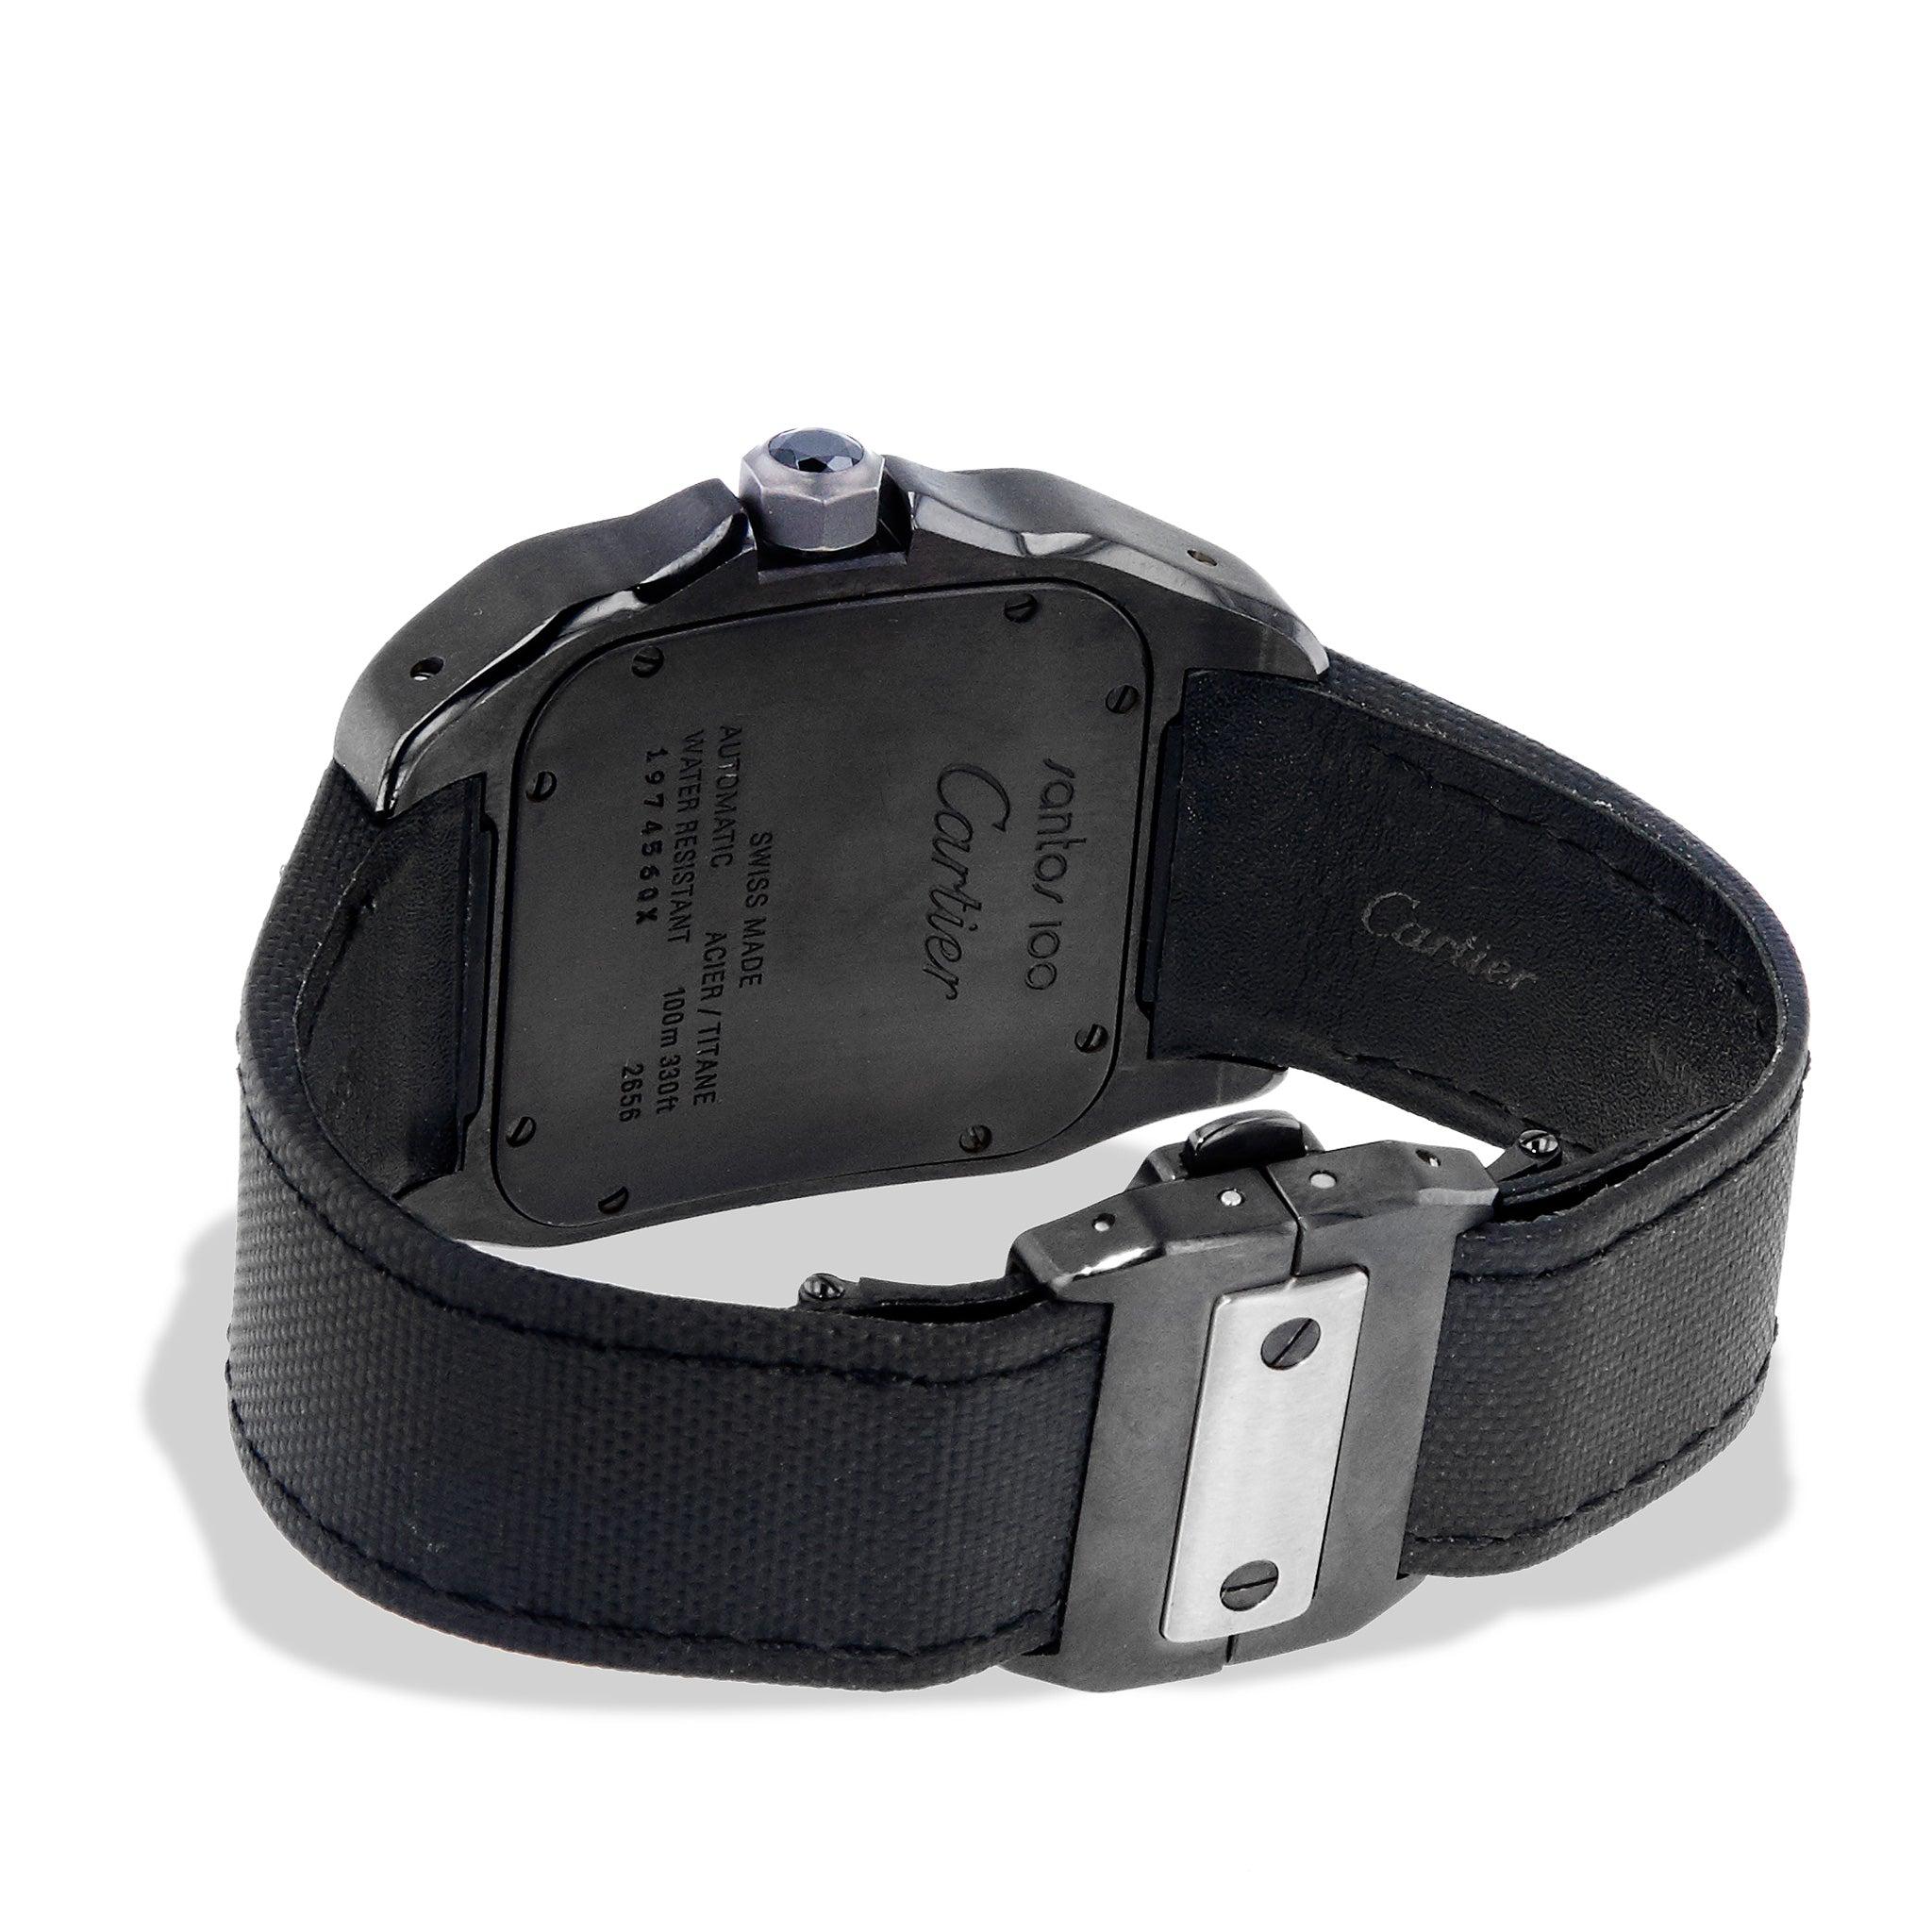 Die Cartier Santos Large 100 Estate Watch besteht aus schwarzem Stahl und Titan.  Ursprünglicher Verkaufspreis von $8.500. Modellnummer: W2020010, Seriennummer: 197456QX. Dieser Zeitmesser misst 51,1 mm mal 42,60 mm.
Cartier Santos Large 100 Estate